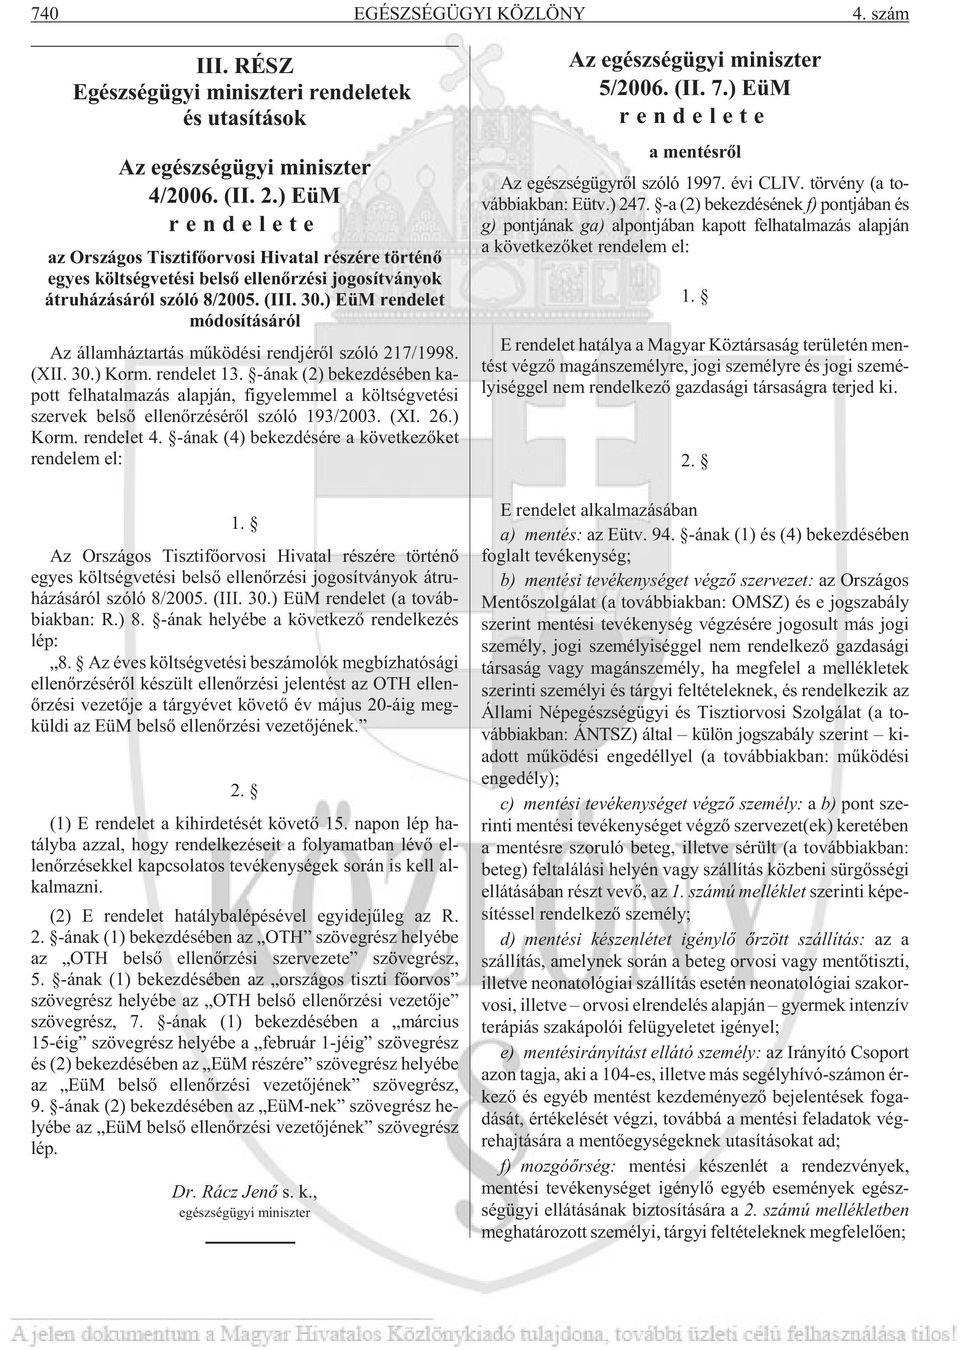 ) EüM rendelet módosításáról Az ál lam ház tar tás mû kö dé si rend jé rõl szóló 217/1998. (XII. 30.) Korm. ren de let 13.